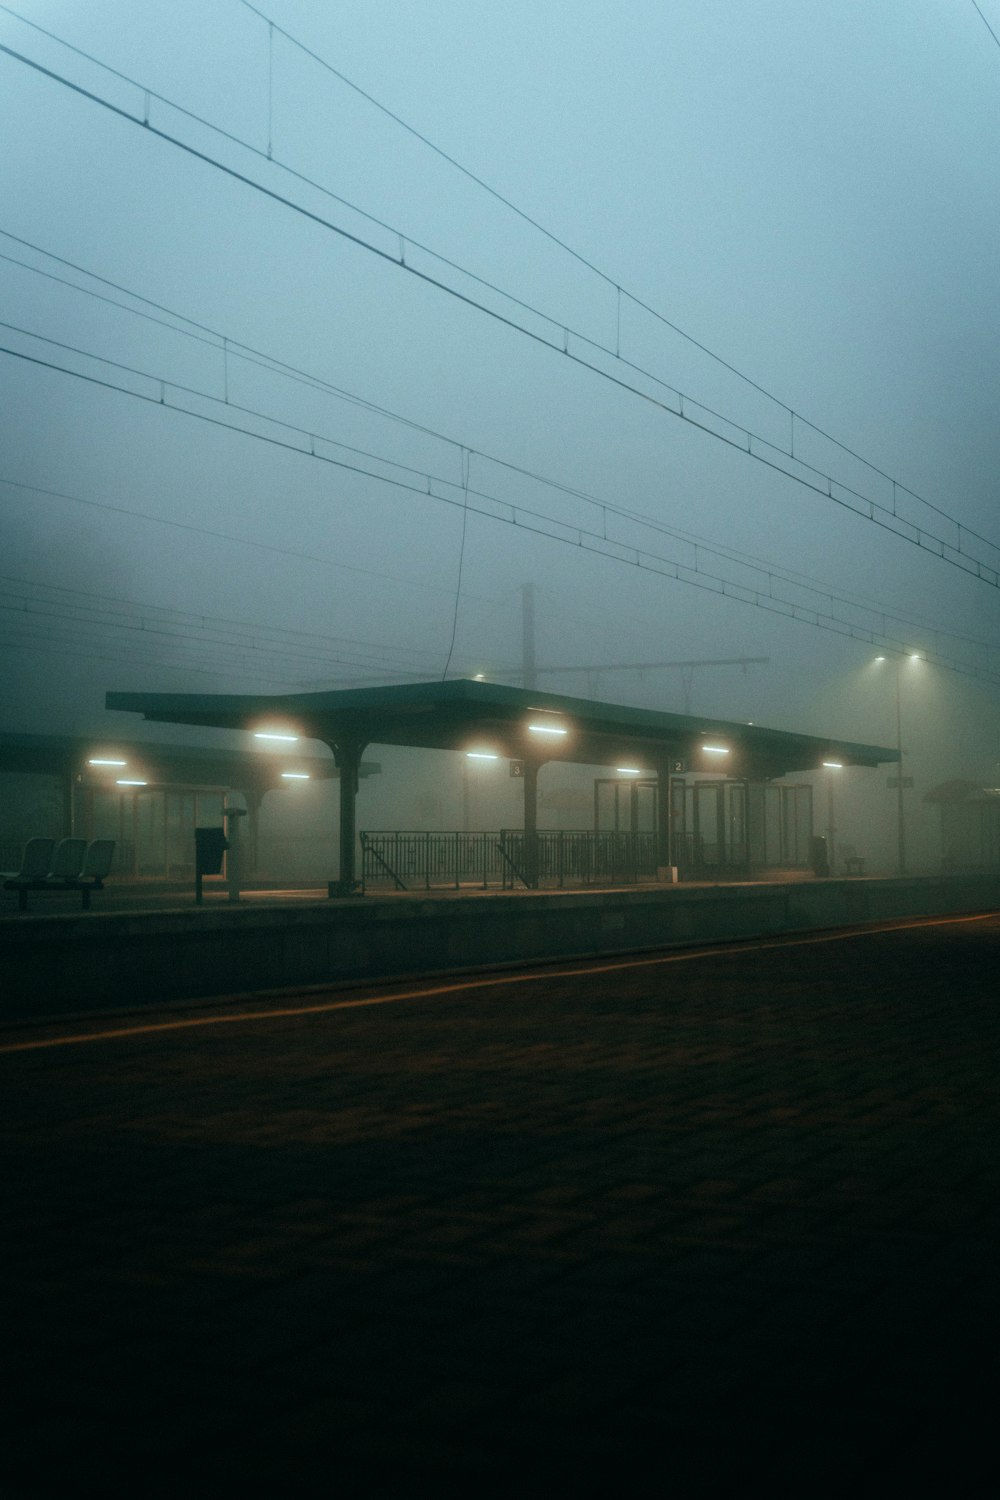 Una stazione ferroviaria nebbiosa con un treno sui binari